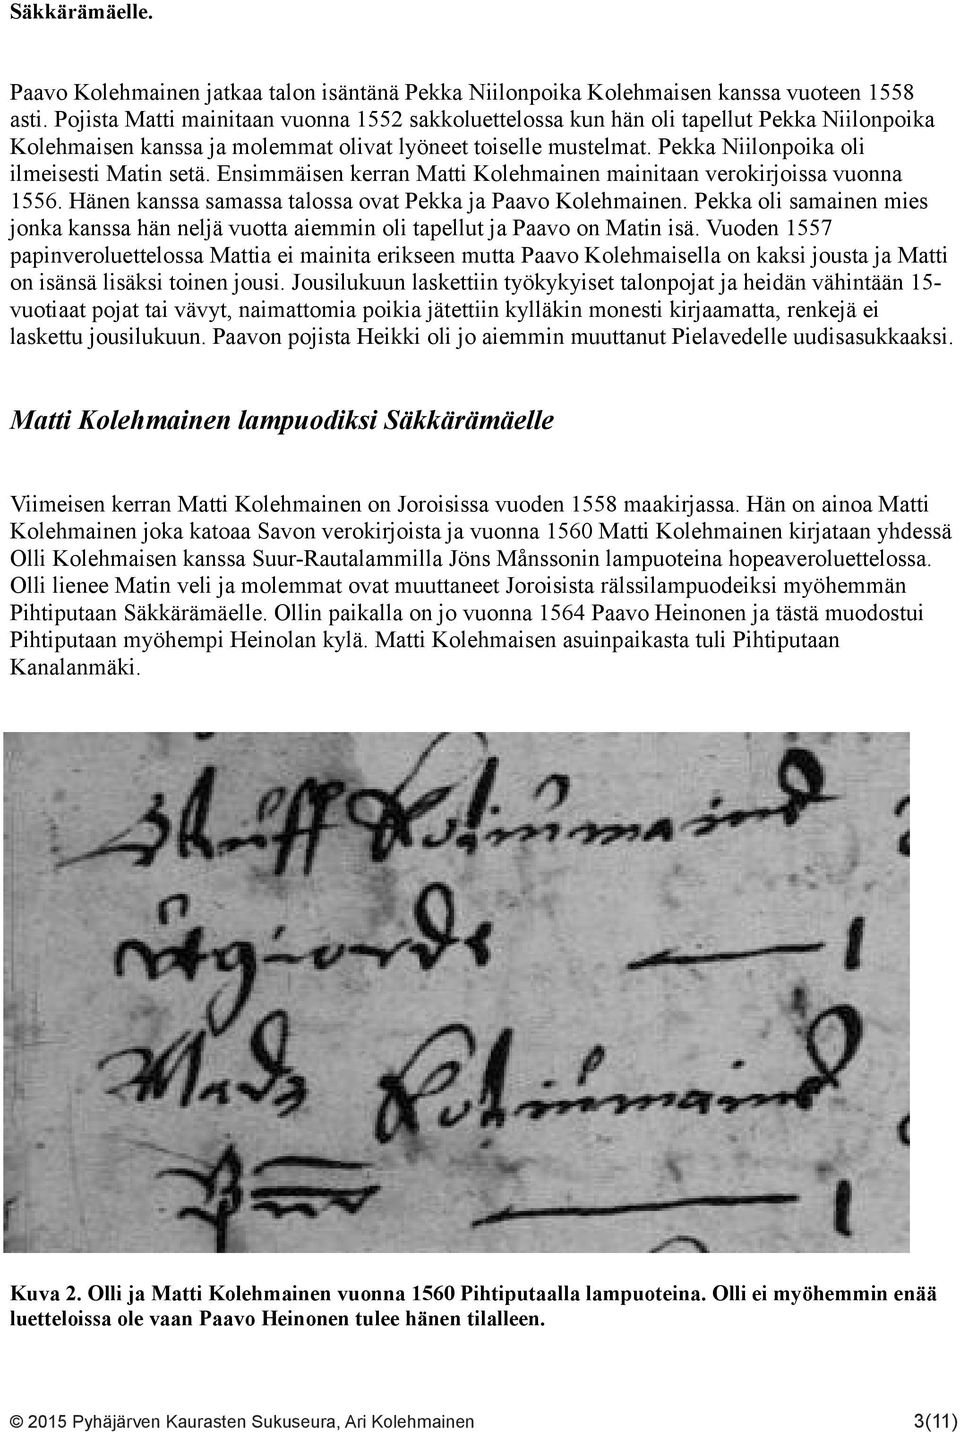 Pekka Niilonpoika oli ilmeisesti Matin setä. Ensimmäisen kerran Matti Kolehmainen mainitaan verokirjoissa vuonna 1556. Hänen kanssa samassa talossa ovat Pekka ja Paavo Kolehmainen.